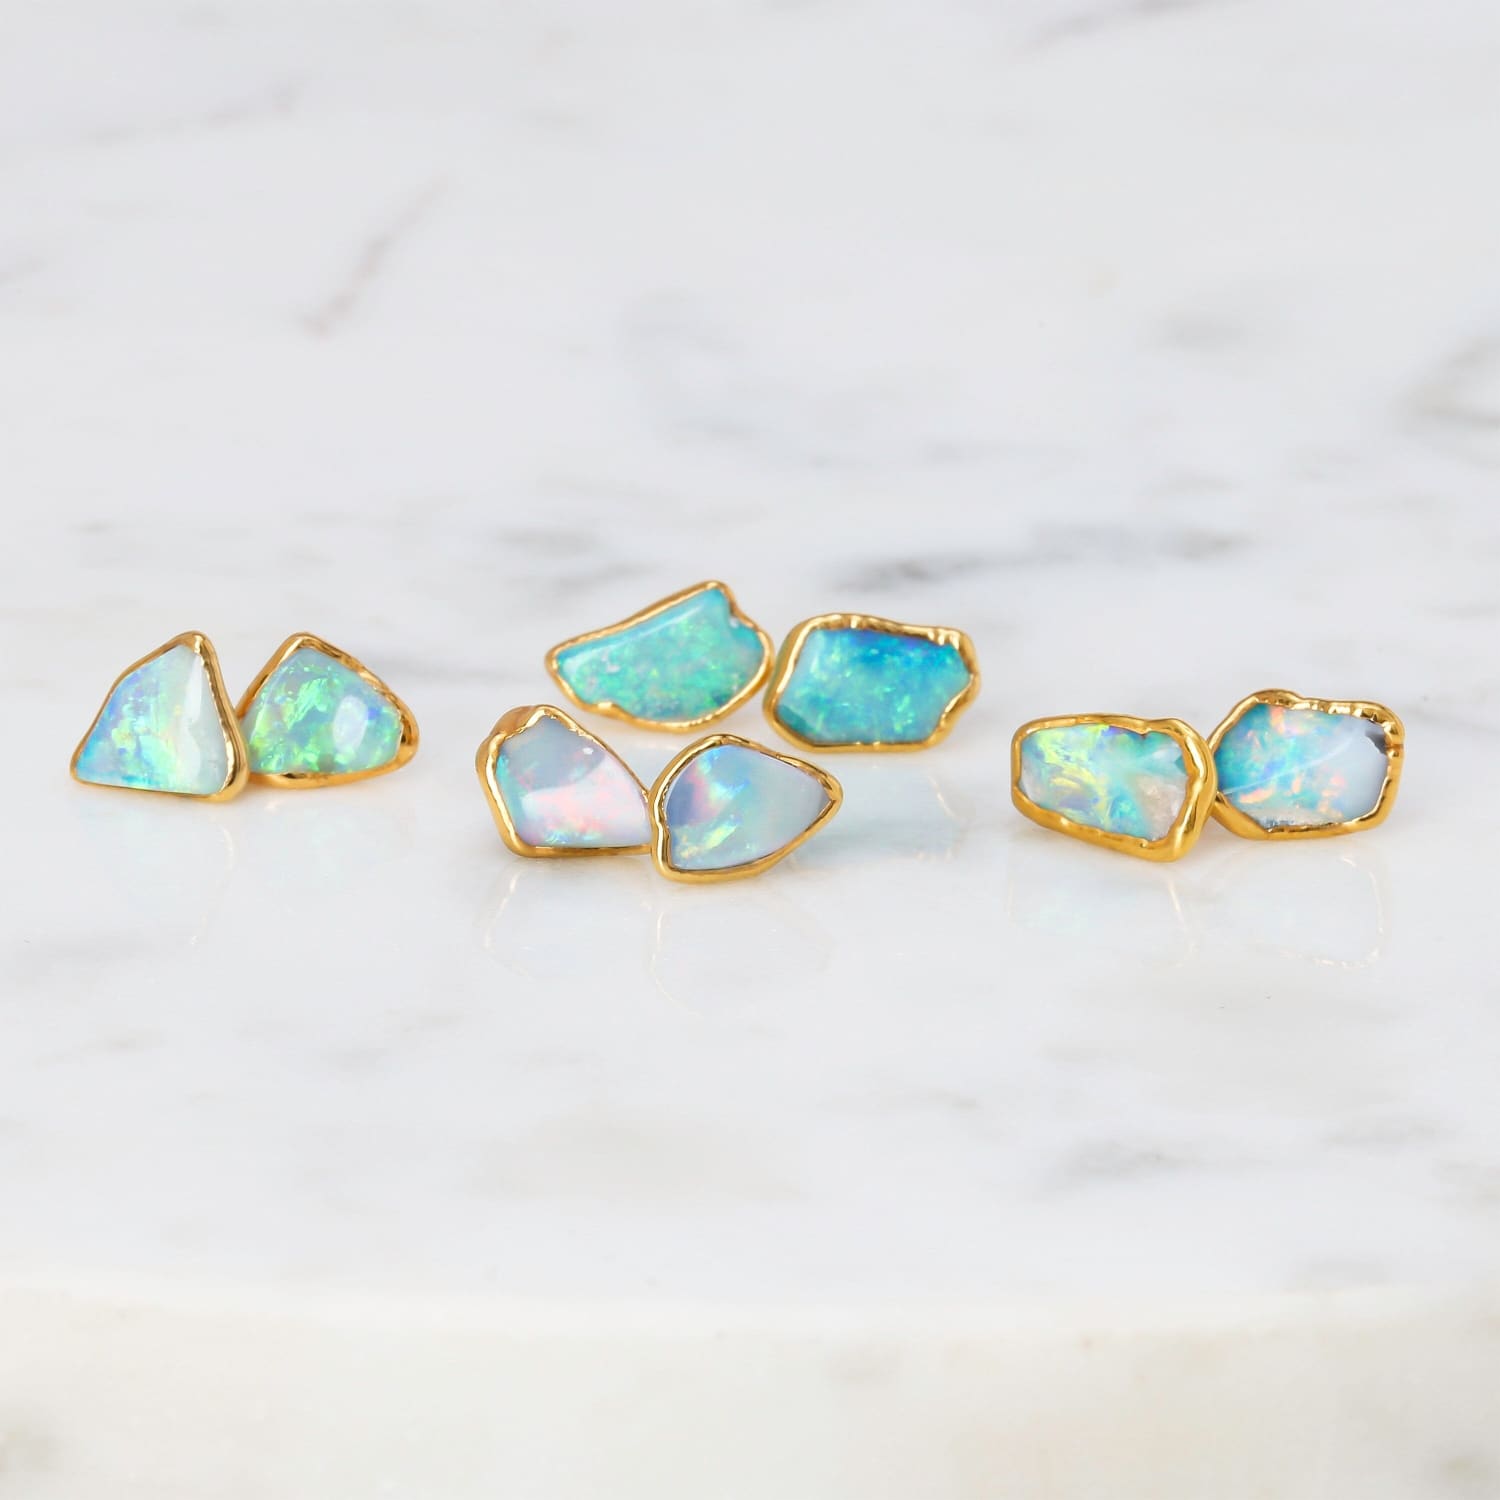 Large Raw Australian Opal Stud Earrings Gemstone Jewelry